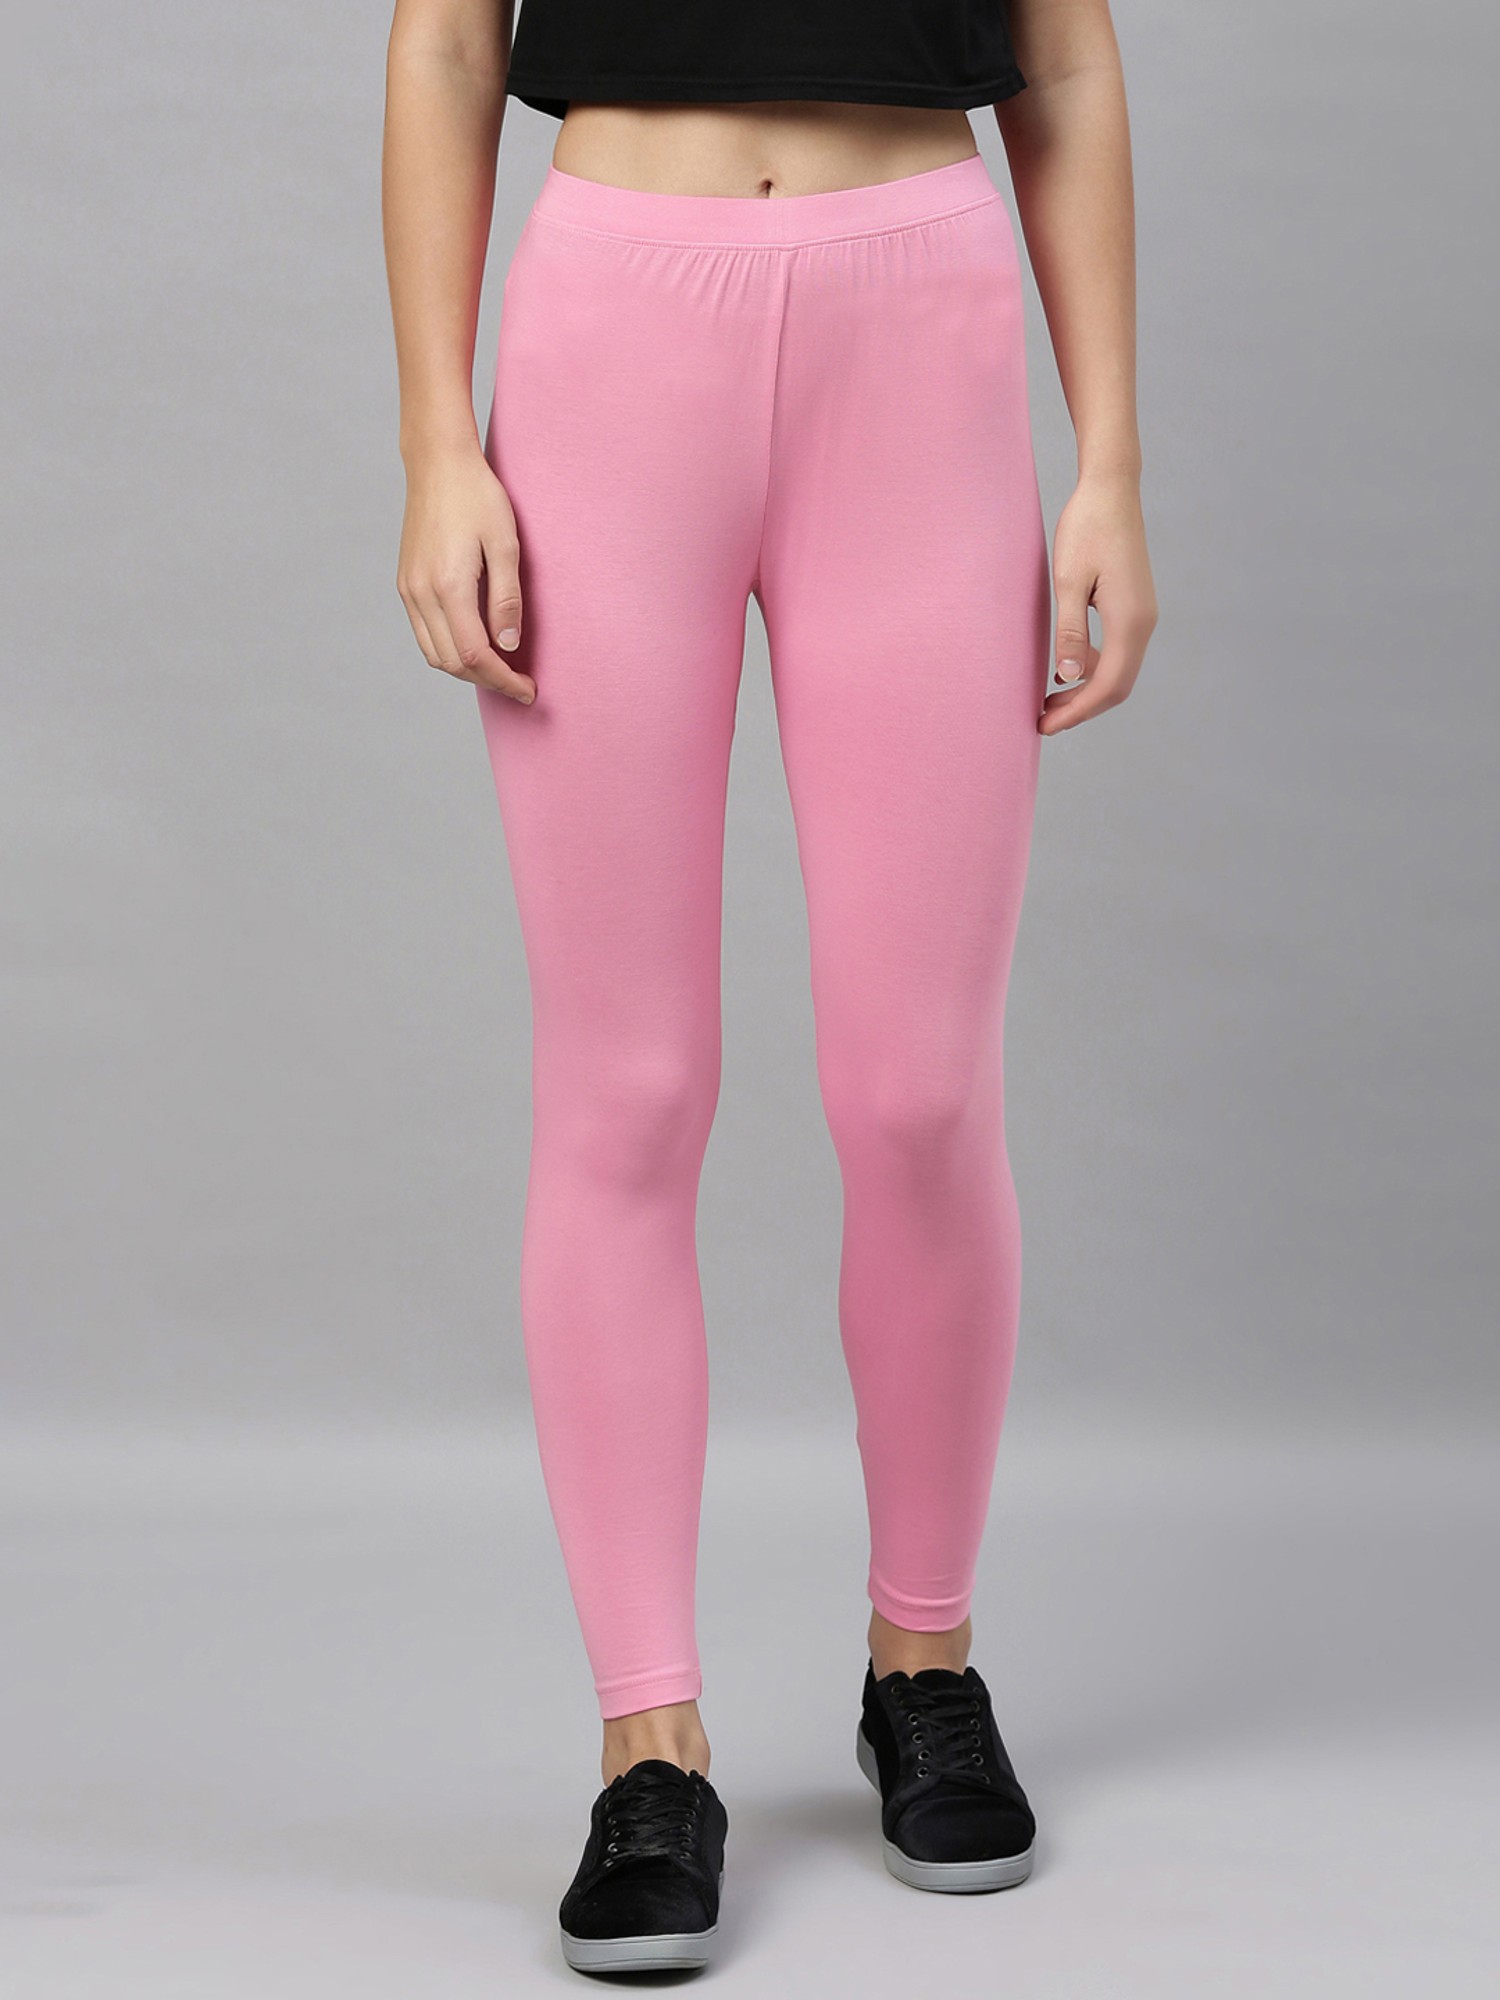 Buy Pink Leggings Cotton Pink Leggings, Blush Pink Leggings,leggings,yoga  Leggings,light Pink Leggings,medium Pink Leggings, Hot Pink Leggings Online  in India - Etsy